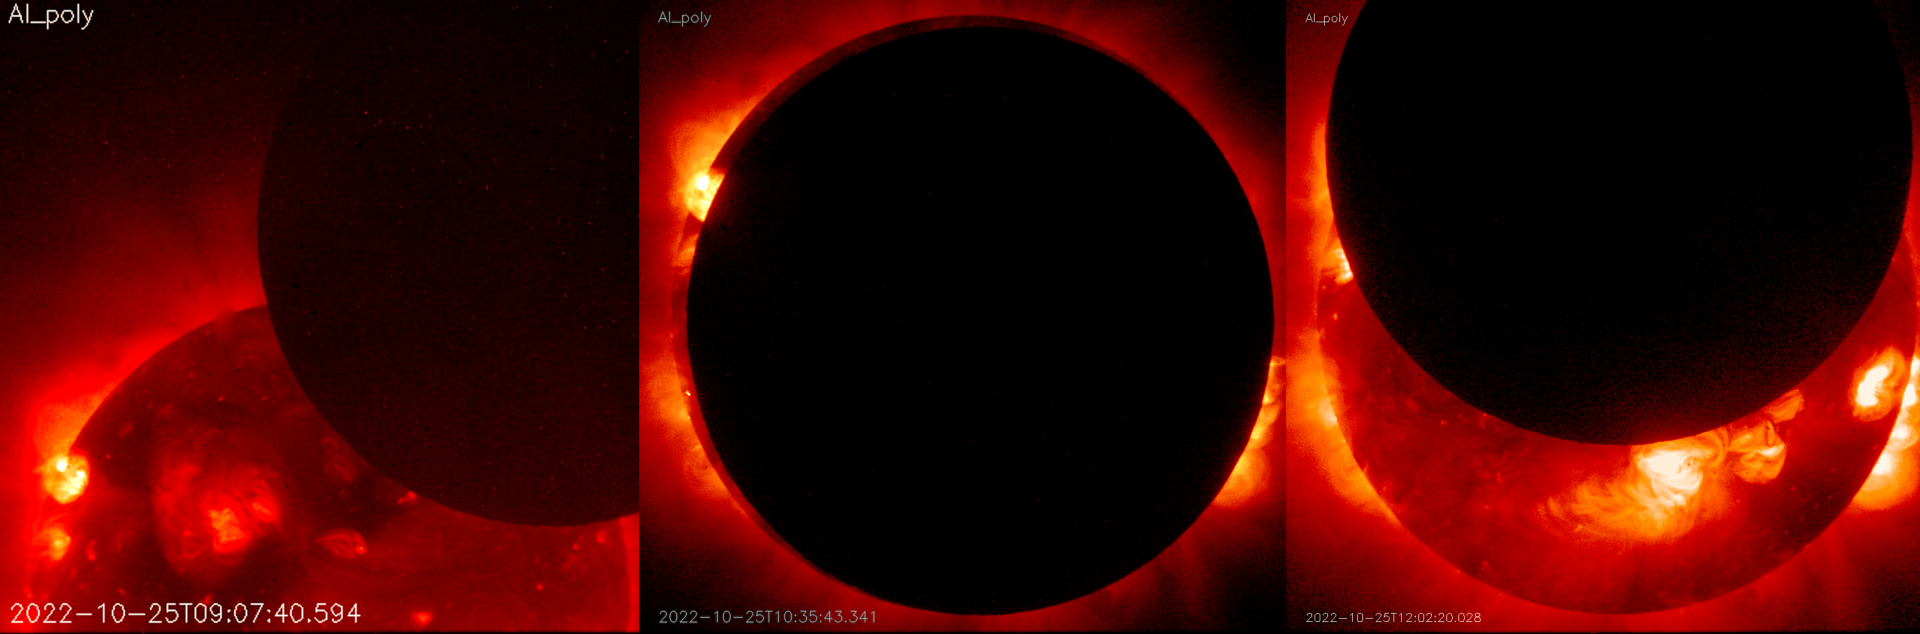 Cонячне затемнення 25 жовтня 2022 року, як його бачив супутник Hinode з орбіти Землі